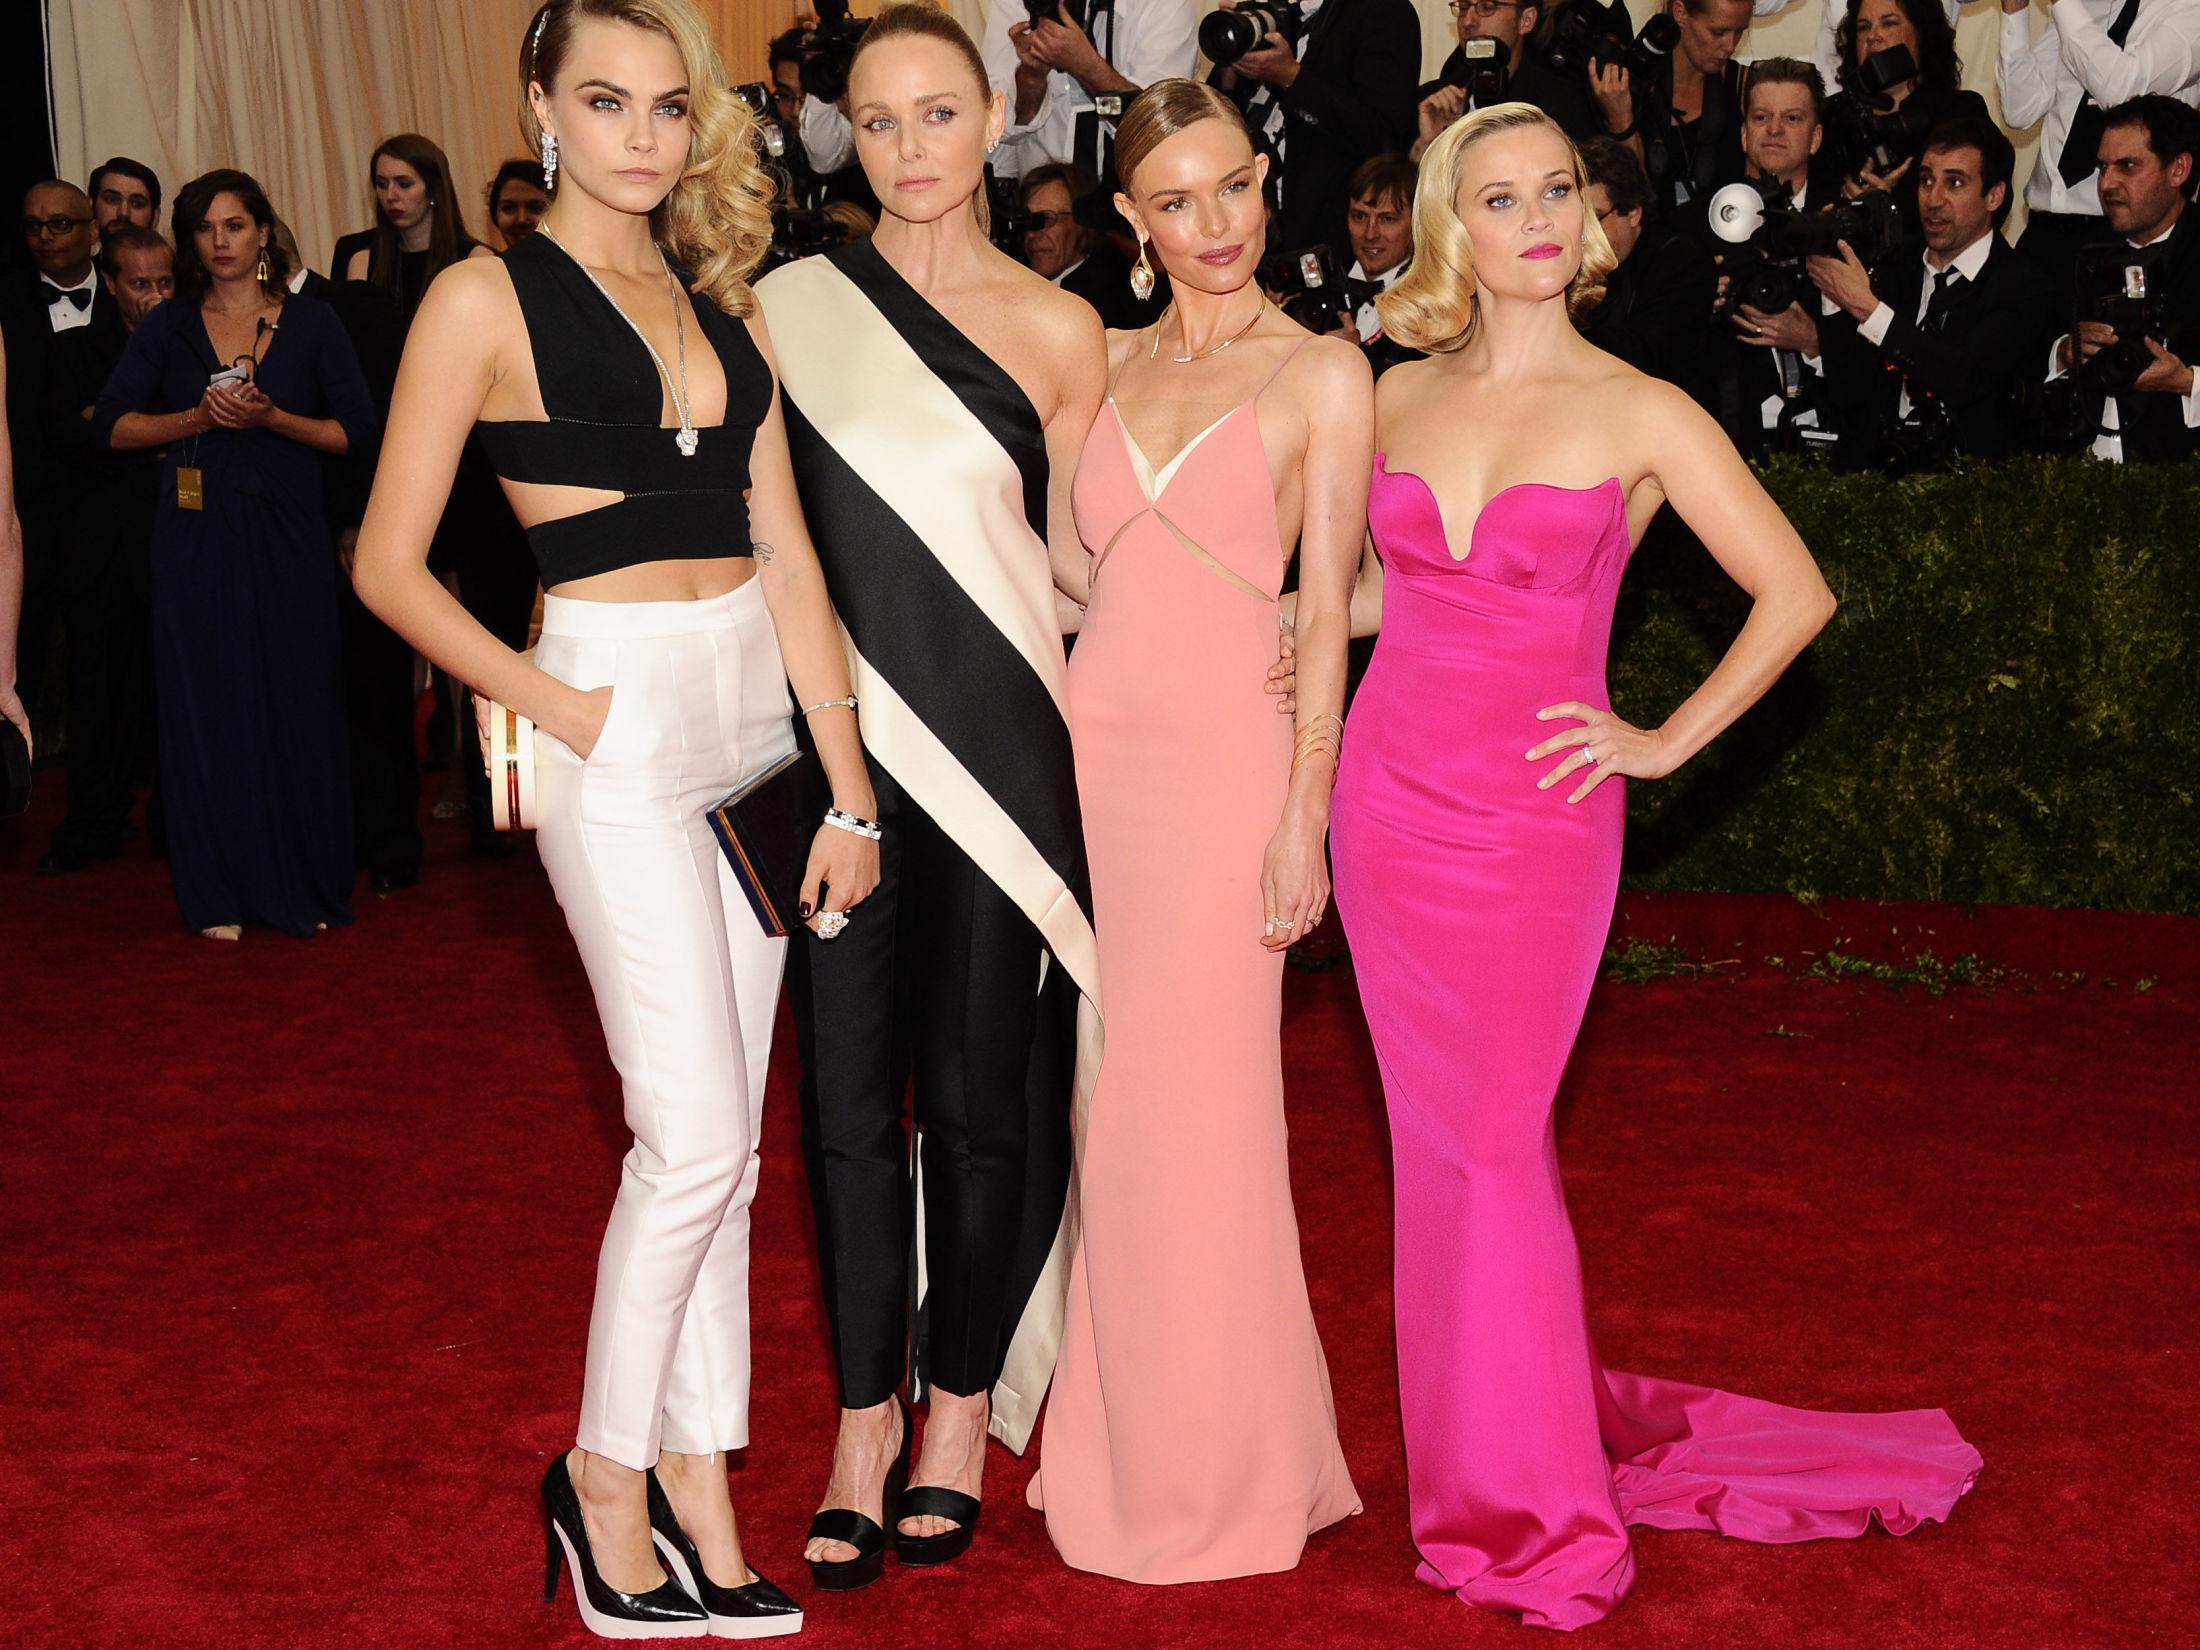 KUL GJENG: Reese Witherspoon, Kate Bosworth, Stella McCartney og Cara Delevingne så upåklagelige ut alle sammen. Foto: NTB Scanpix